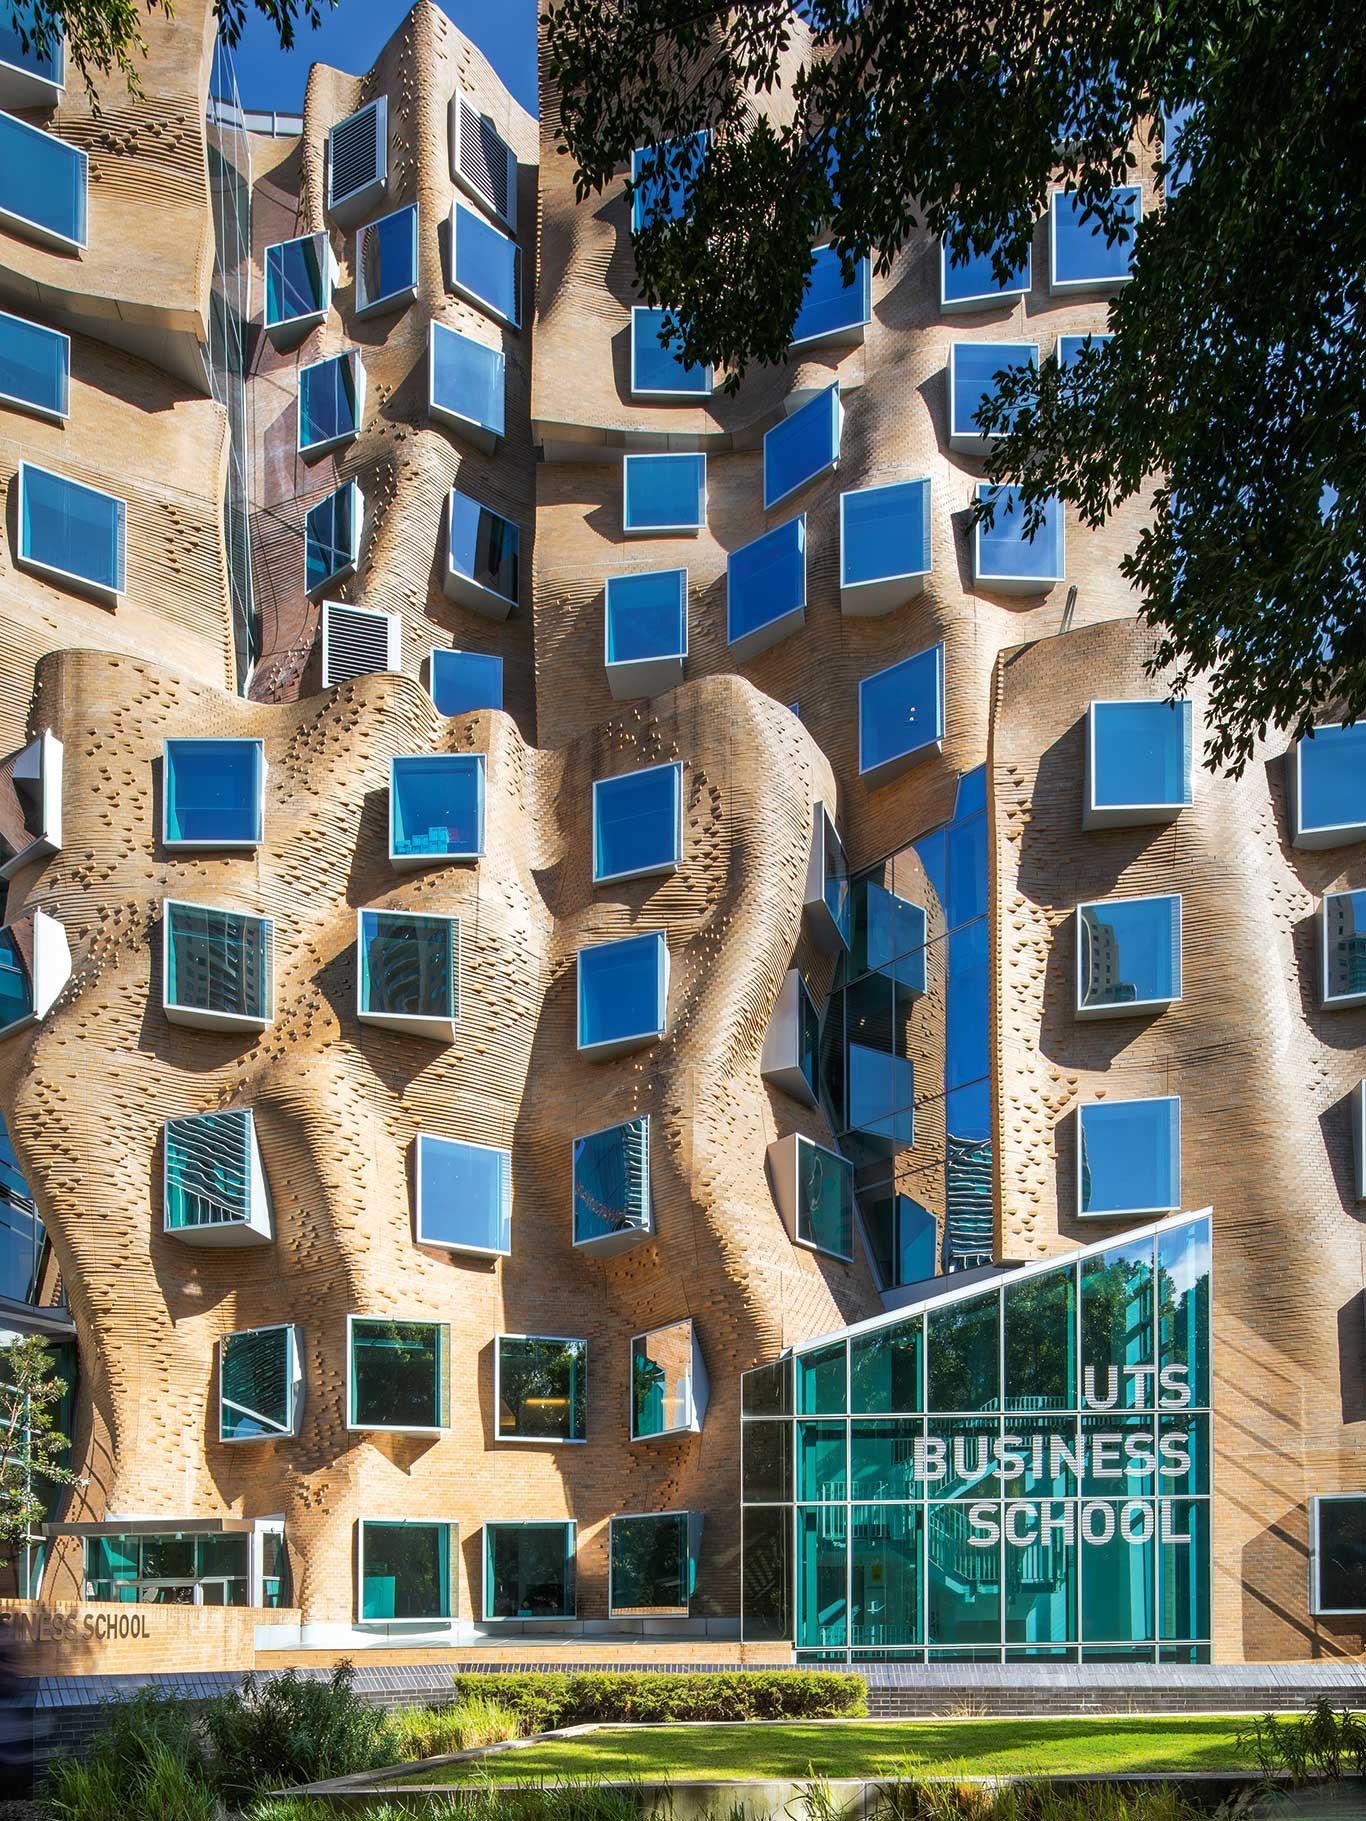 Dr Chau Chak Wing Building, Sydney Stararchitekt Frank Gehry zu seinem Entwurf: »Es mag vielleicht eine braune Papiertüte sein, aber das Innenleben ist flexibel, es gibt viel Platz für Veränderung und Bewegung.« Dieses Statement des Architekten zeugt von Größe angesichts von »zerknautschter Papiertüte«-Kritik. Das Gebäude beherbergt die UTS Business School. Dekonstruktivistische Entwürfe haben es oft schwer. 